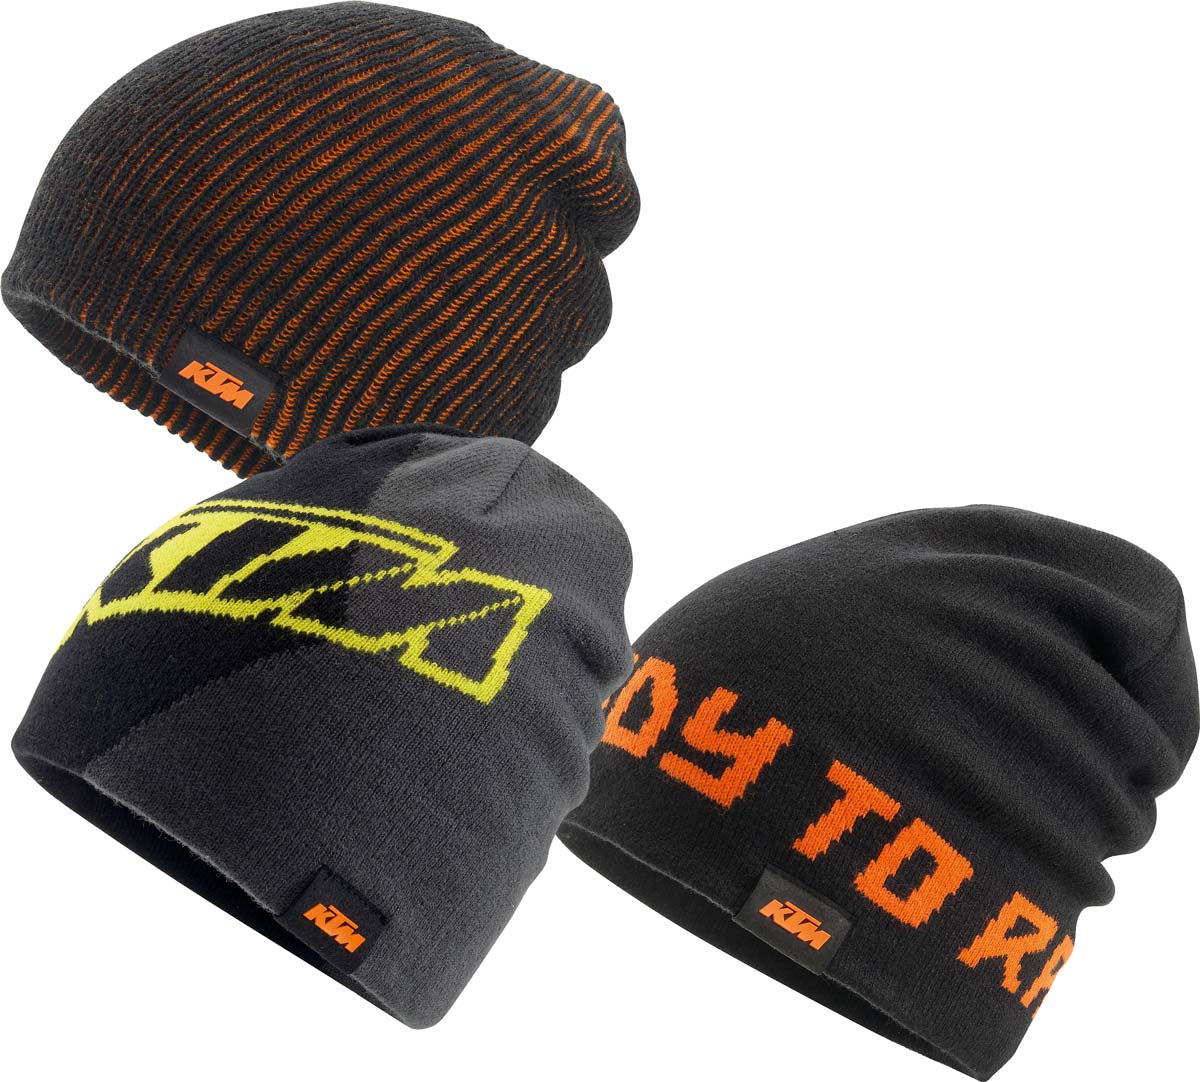 KTM propose également des bonnets en laine pour garder la tête au chaud